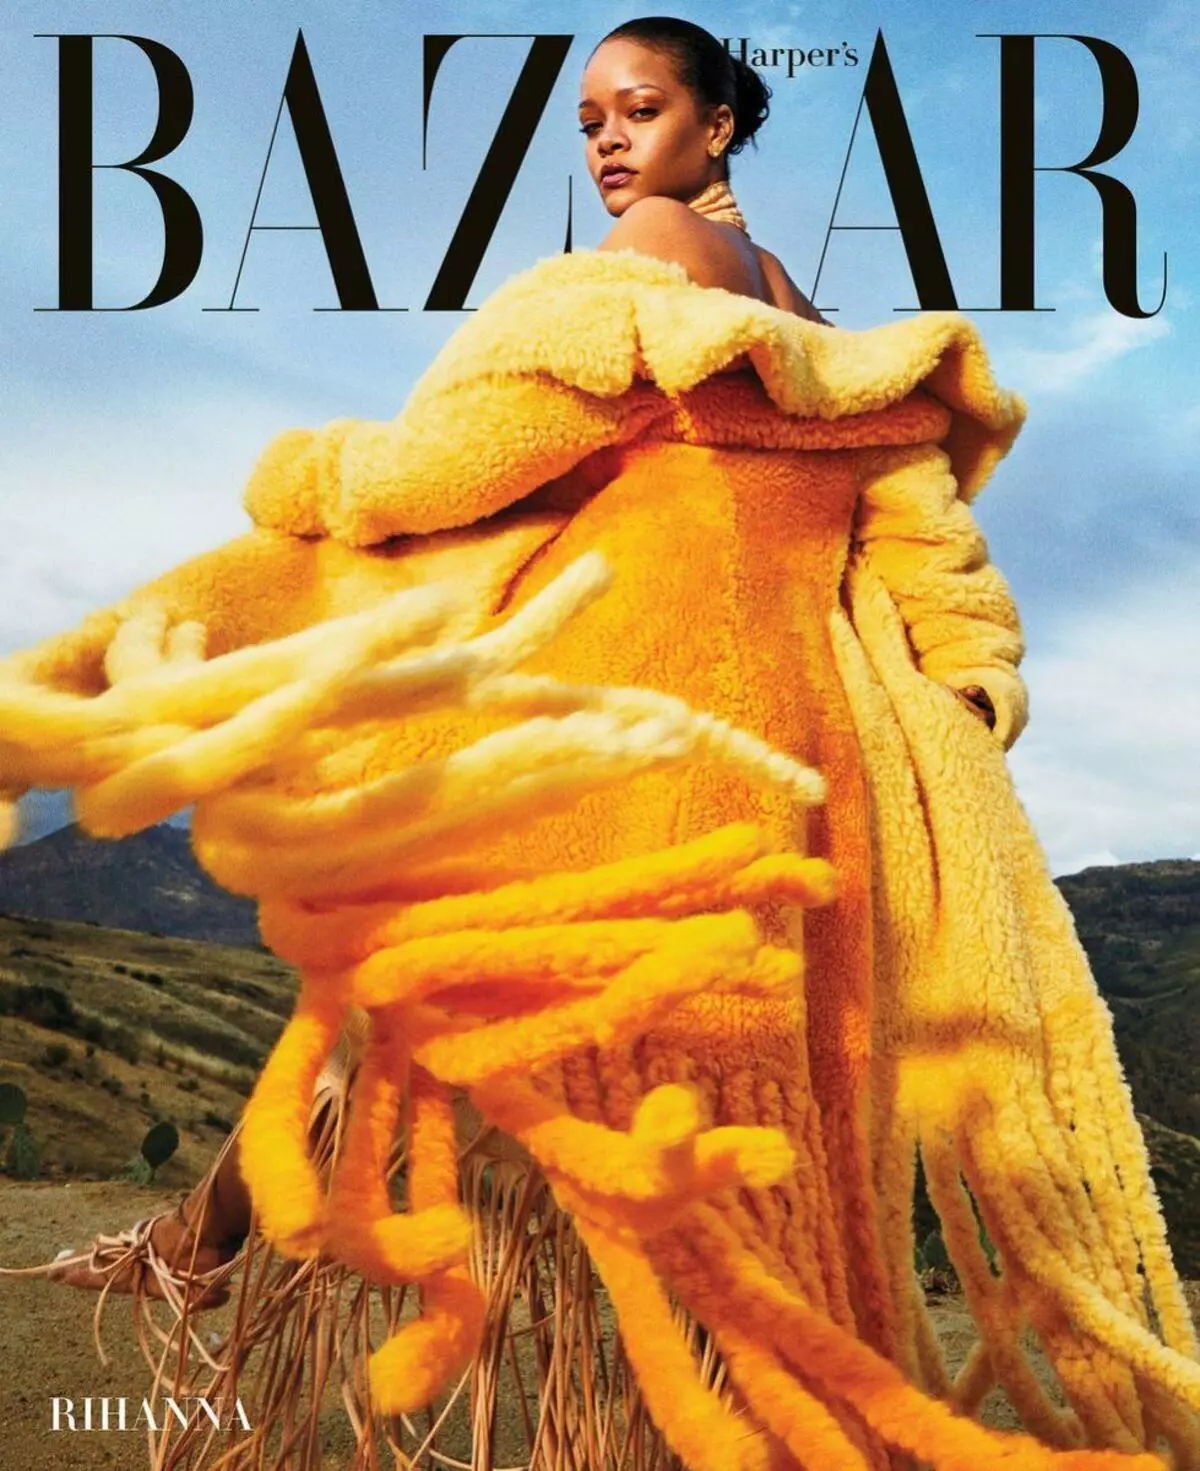 Med skraldespakker. Bemærk: Rihanna Dekoreret Cover Harpers Bazaar 17995_2